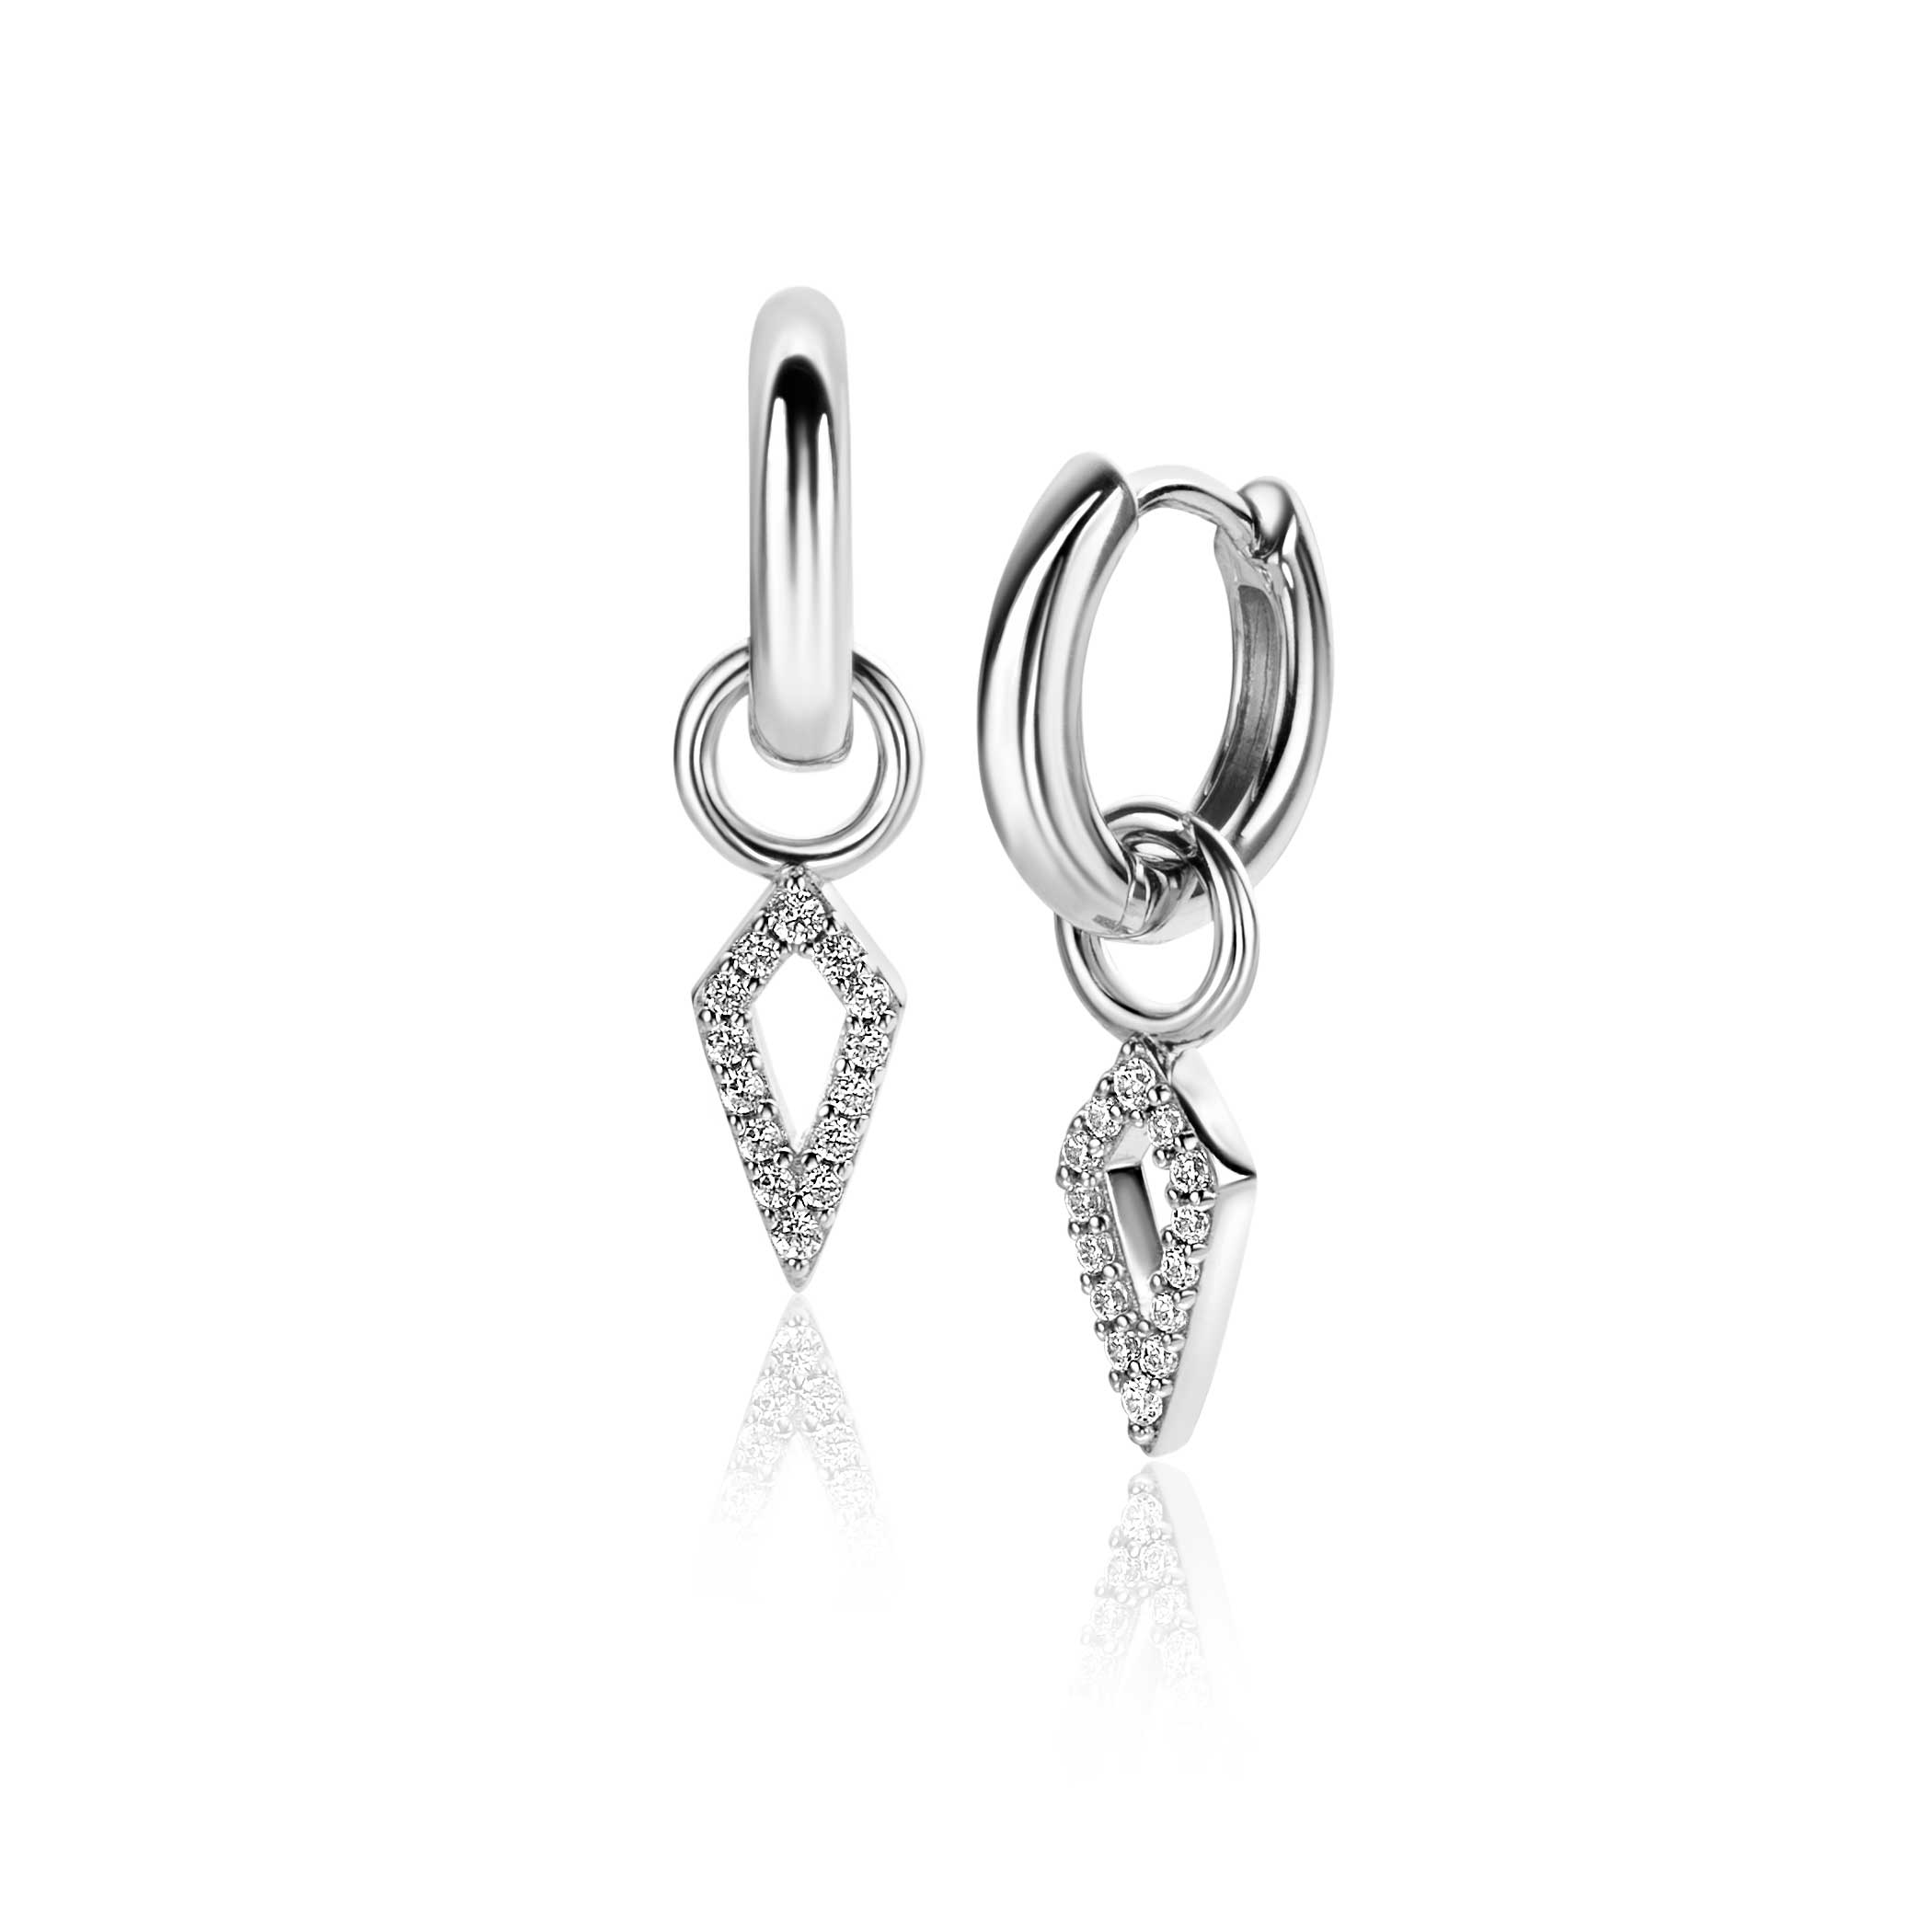 15mm ZINZI Sterling Sterling Silver Ear Pendants Open Diamond-shape White Zirconias ZICH2497 (excl. hoop earrings)